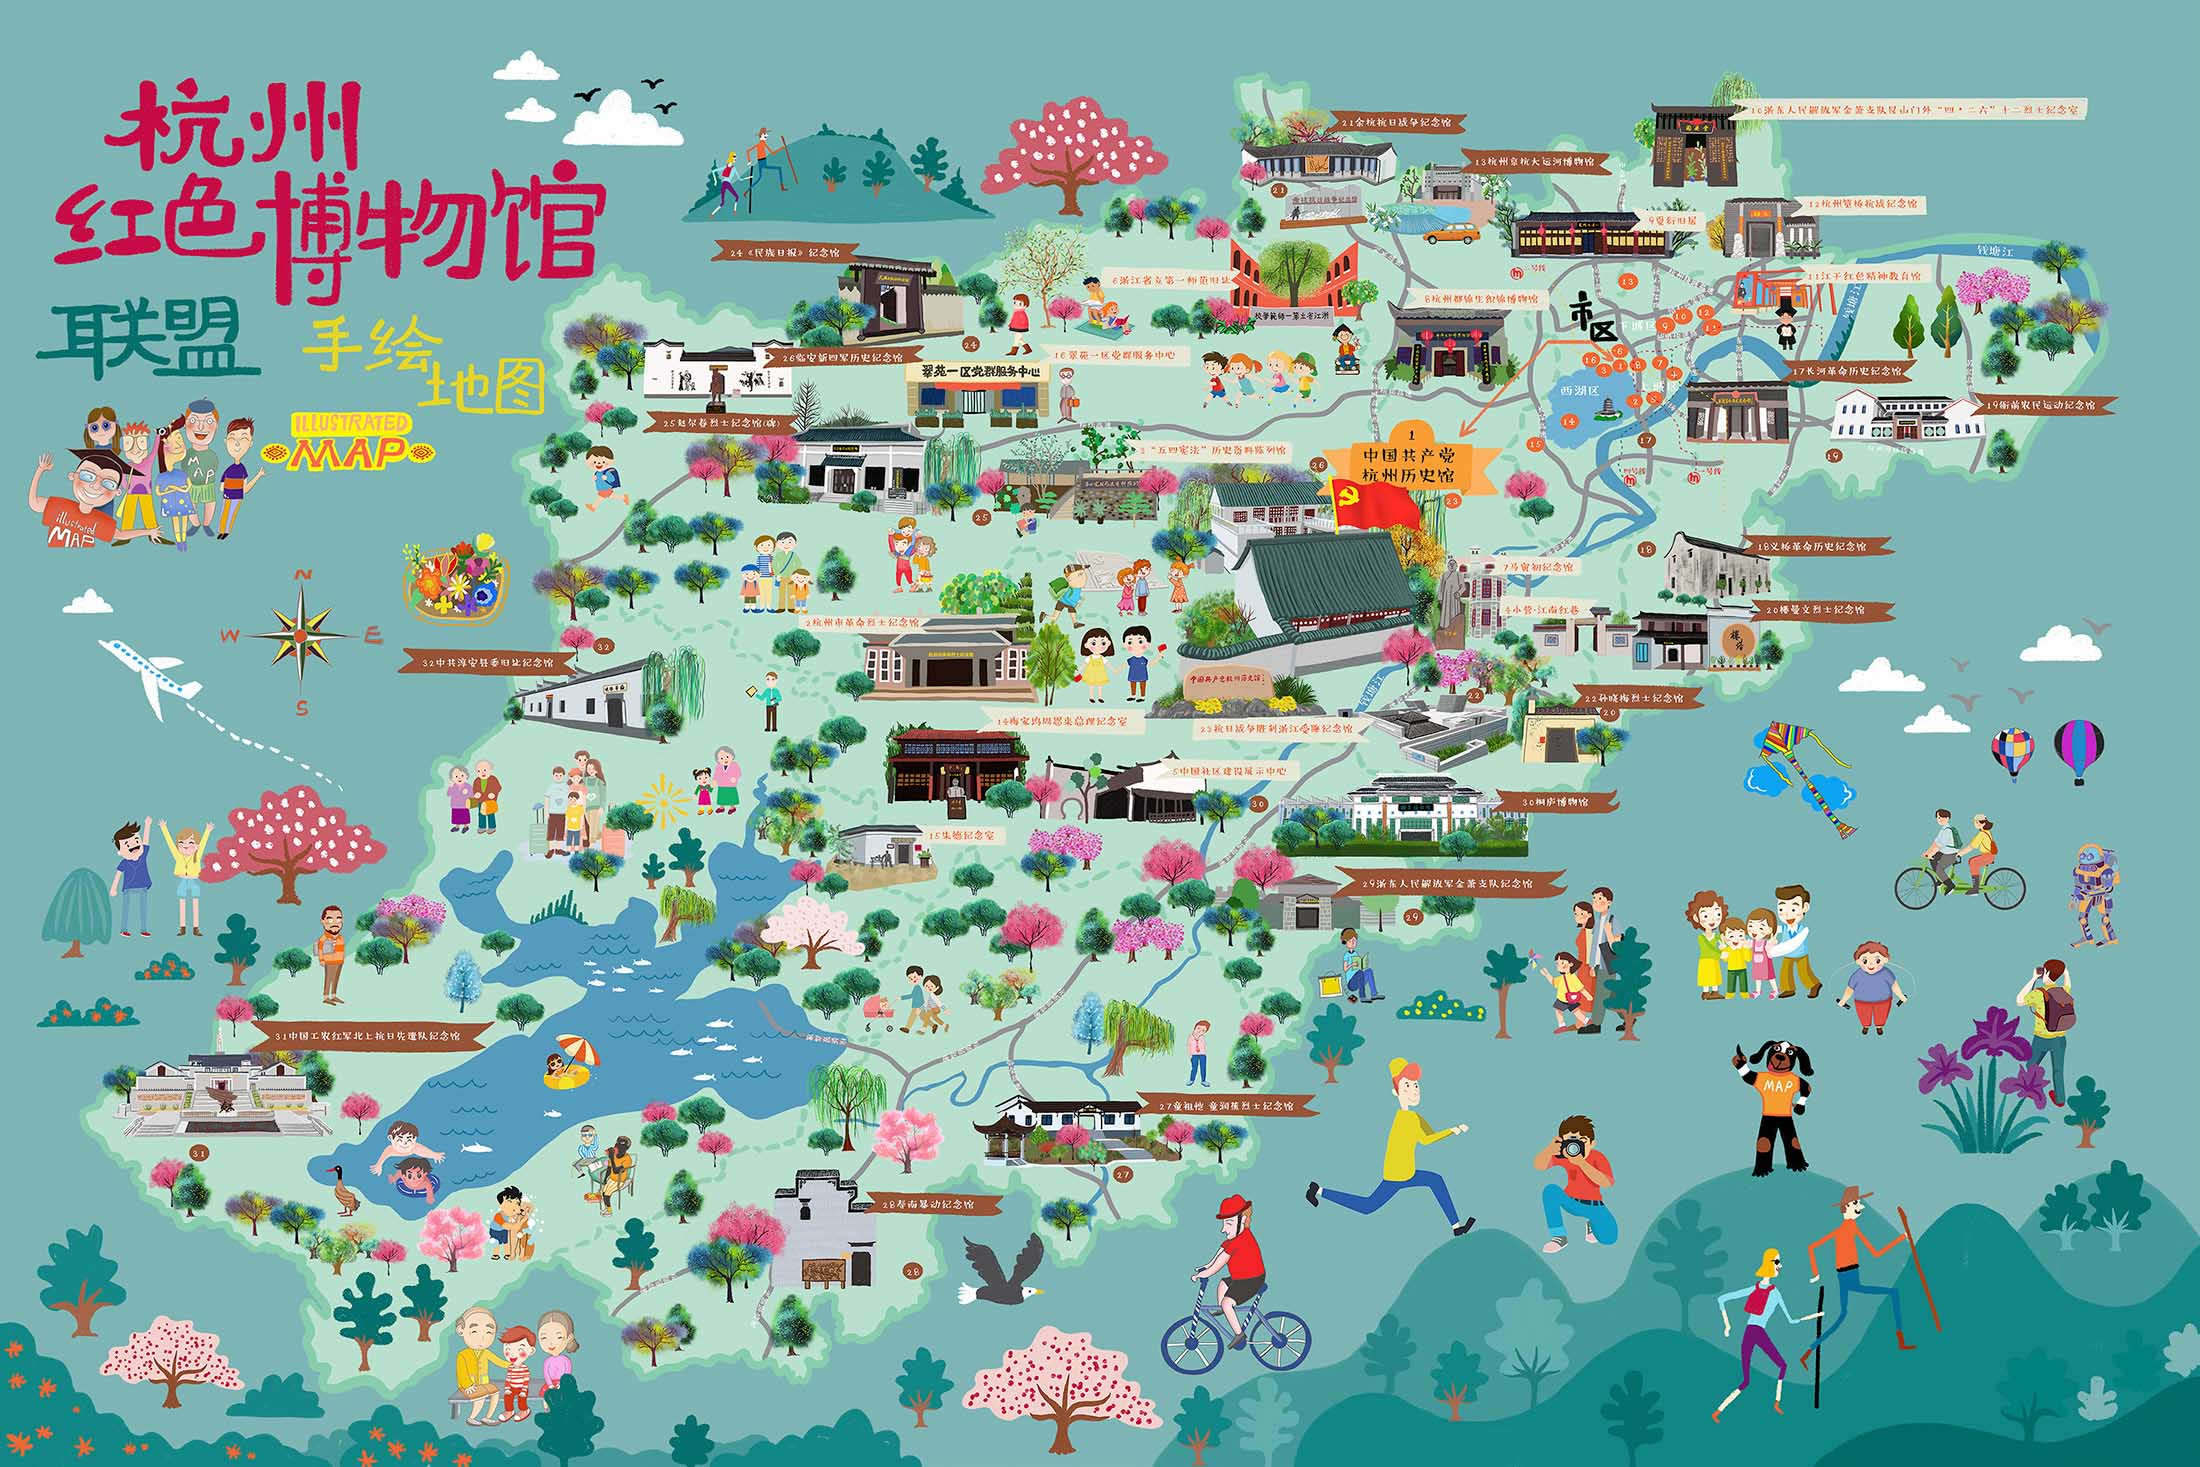 杨林街道手绘地图与科技的完美结合 